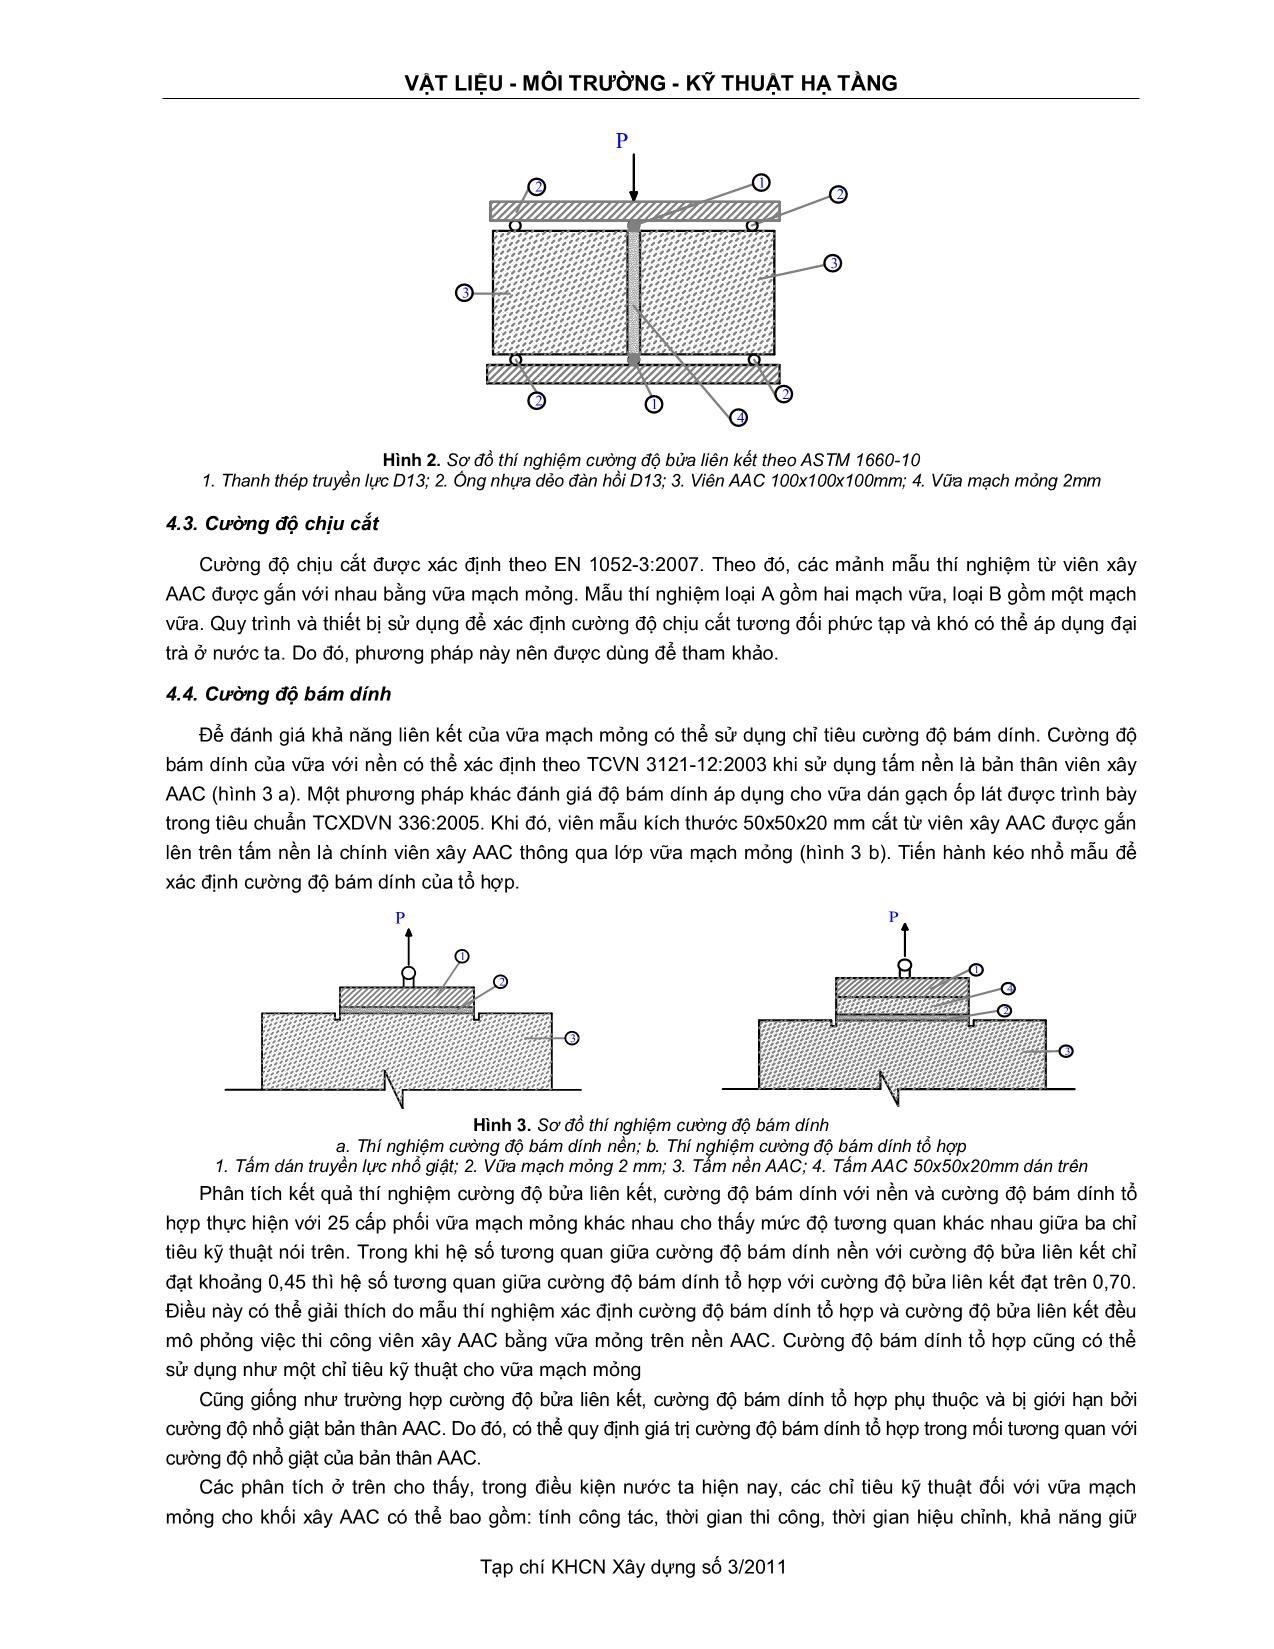 Xây dựng các chỉ tiêu kỹ thuật cho vữa mạch mỏng xây tường bê tông khí chưng áp trang 5